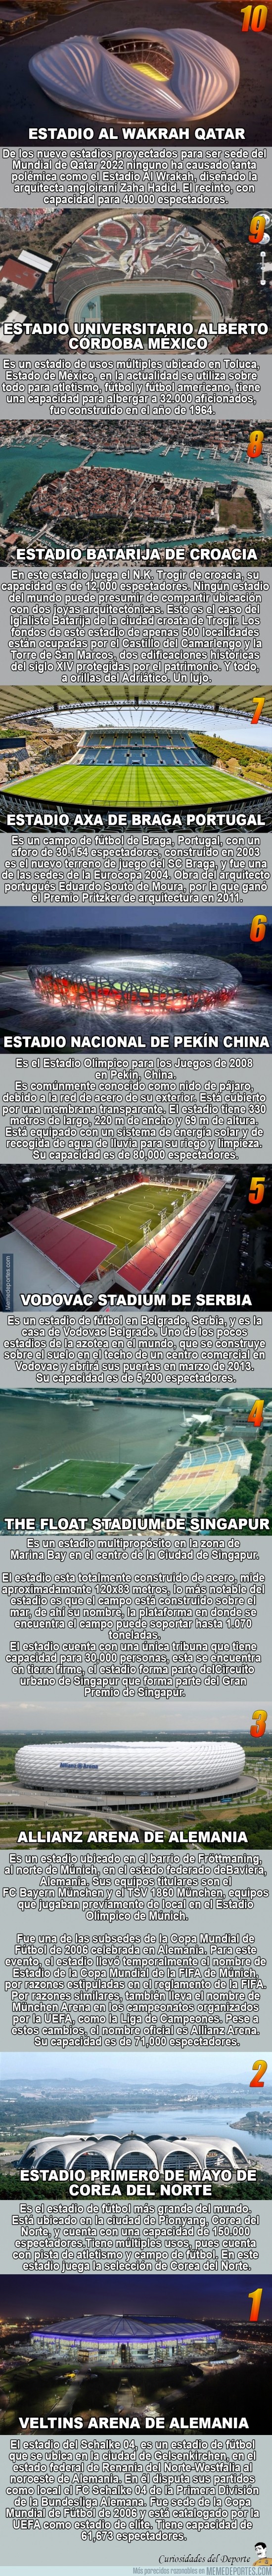 273855 - Los 10 estadios más originales del mundo. ¿Estás de acuerdo?